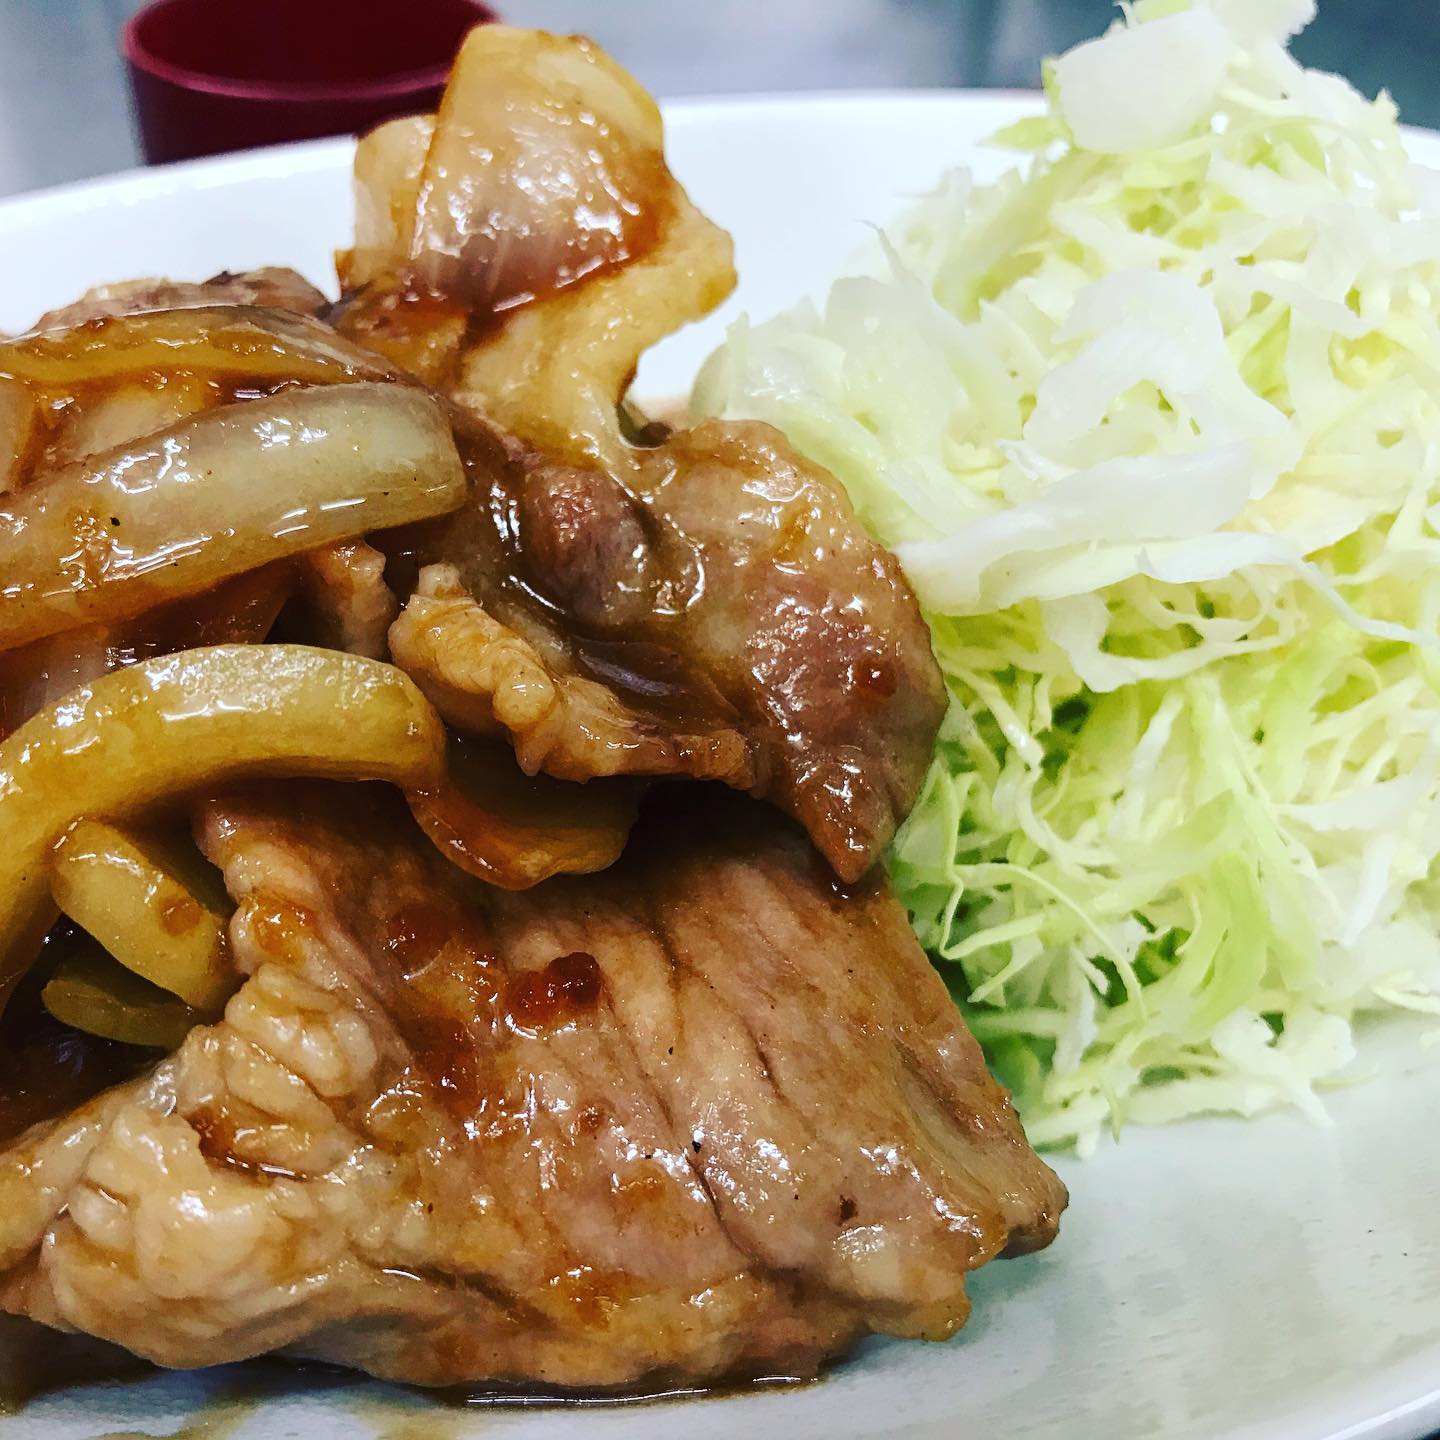 舞米豚の生姜焼き定食

ヤマキチでは山辺町特産 舞米豚が
美味しく食べれます